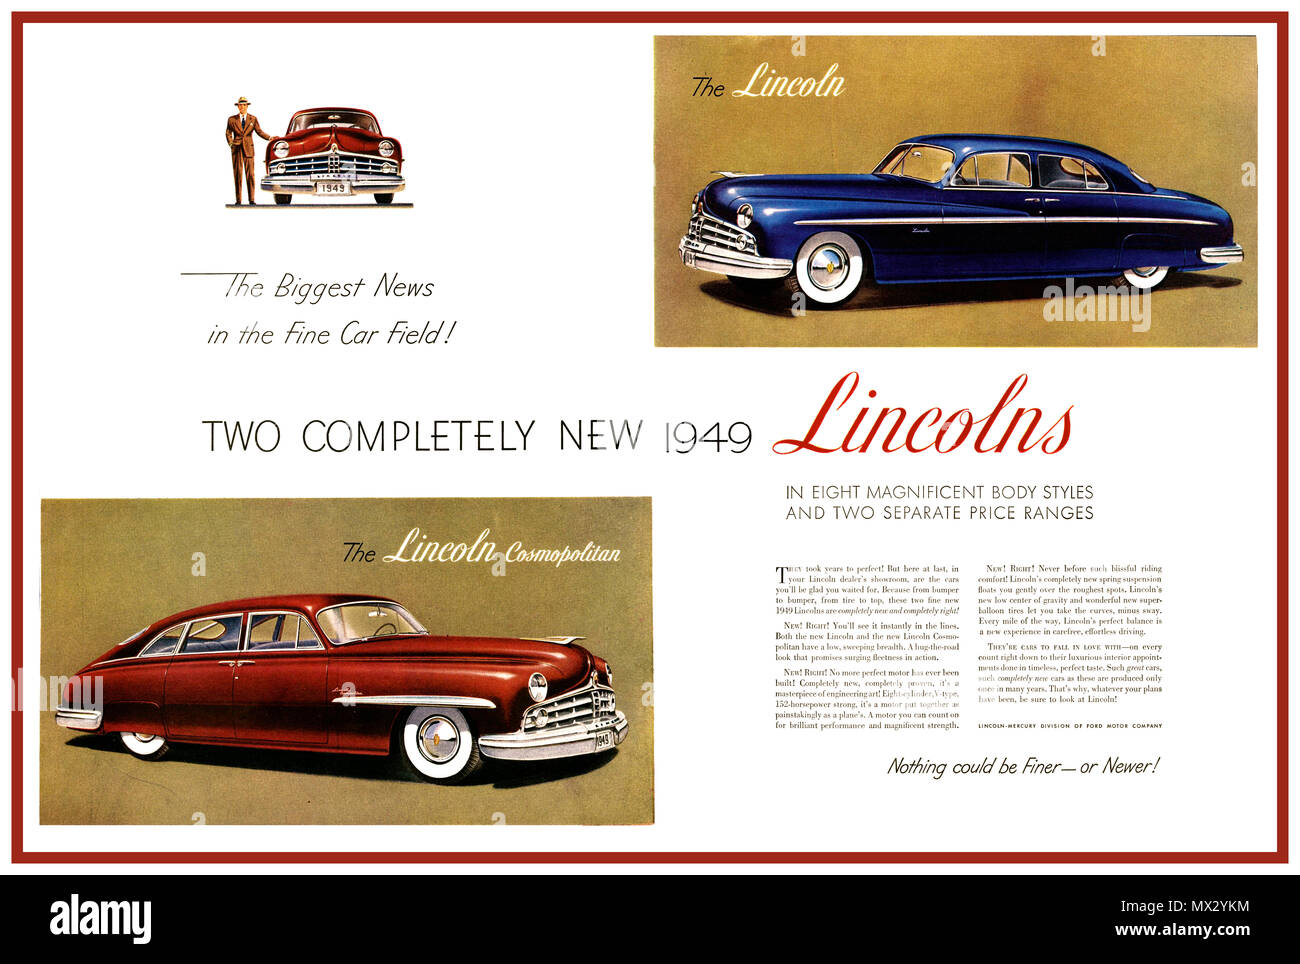 1949 LINCOLN Vintage voiture américaine de luxe de l'affiche publicitaire pour la publicité et la Lincoln Lincoln Cosmopolitan automobile automobile 'la plus grande nouvelle de l'amende car un champ' Banque D'Images